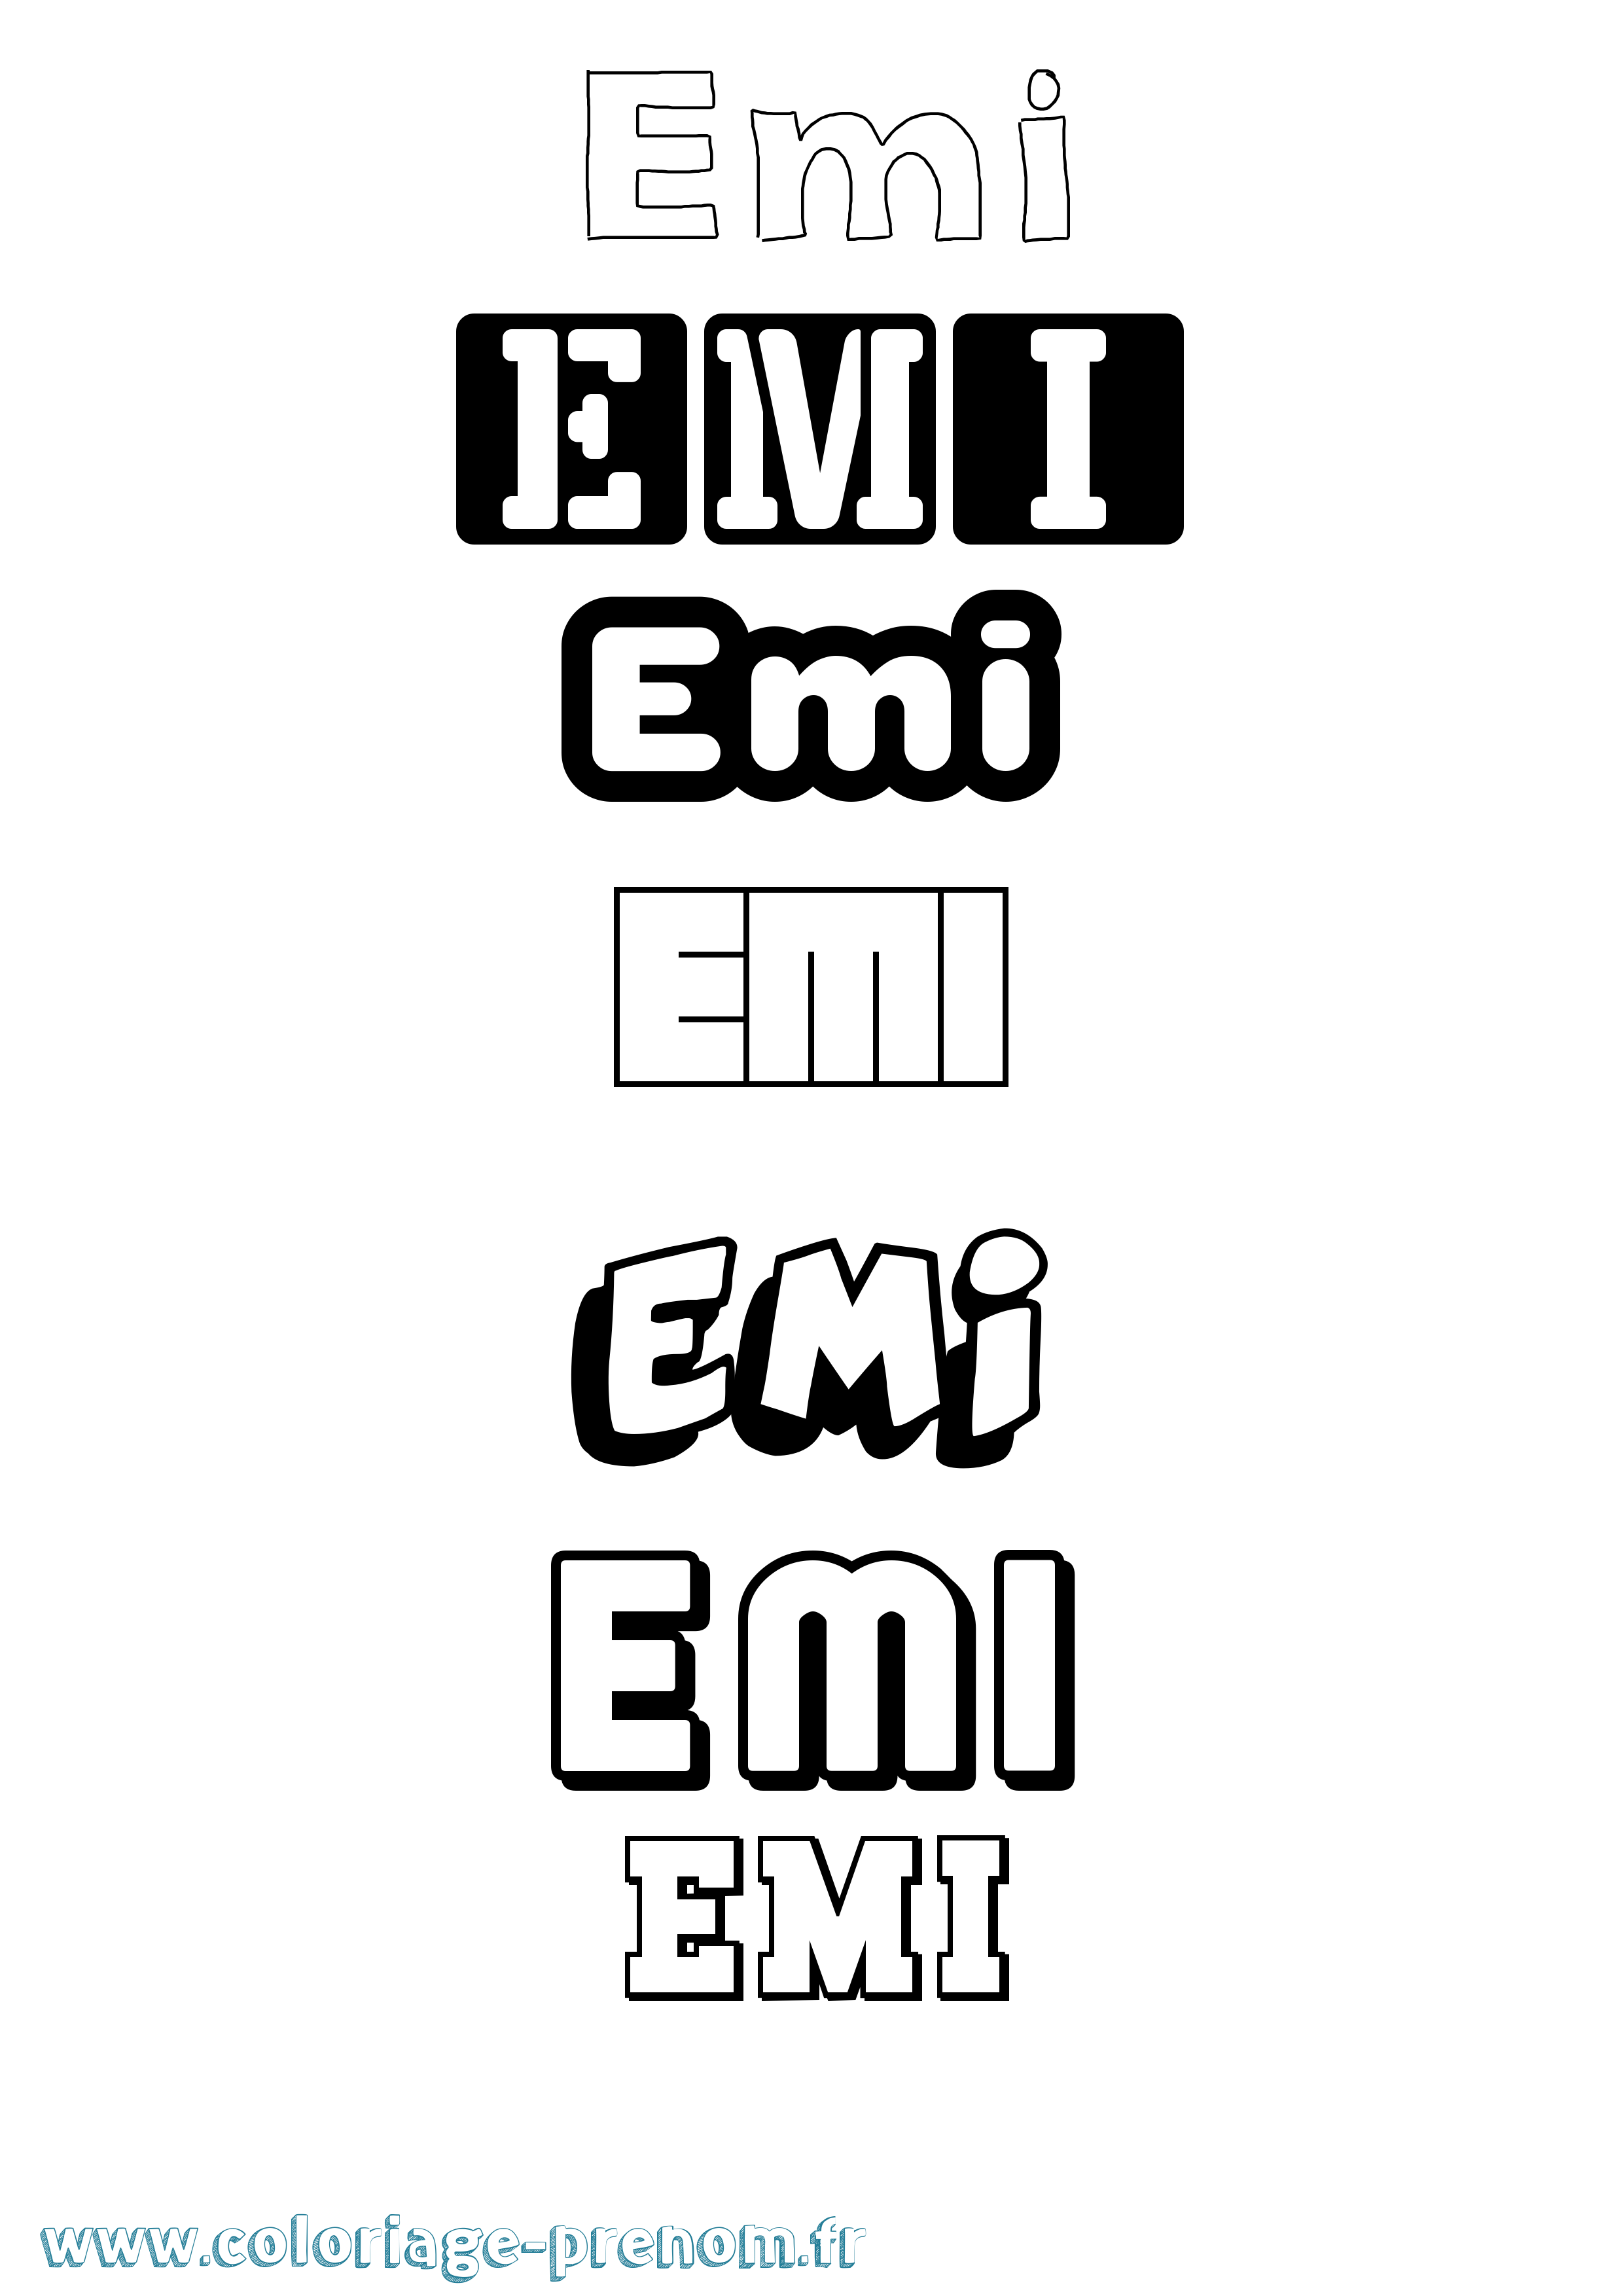 Coloriage prénom Emi